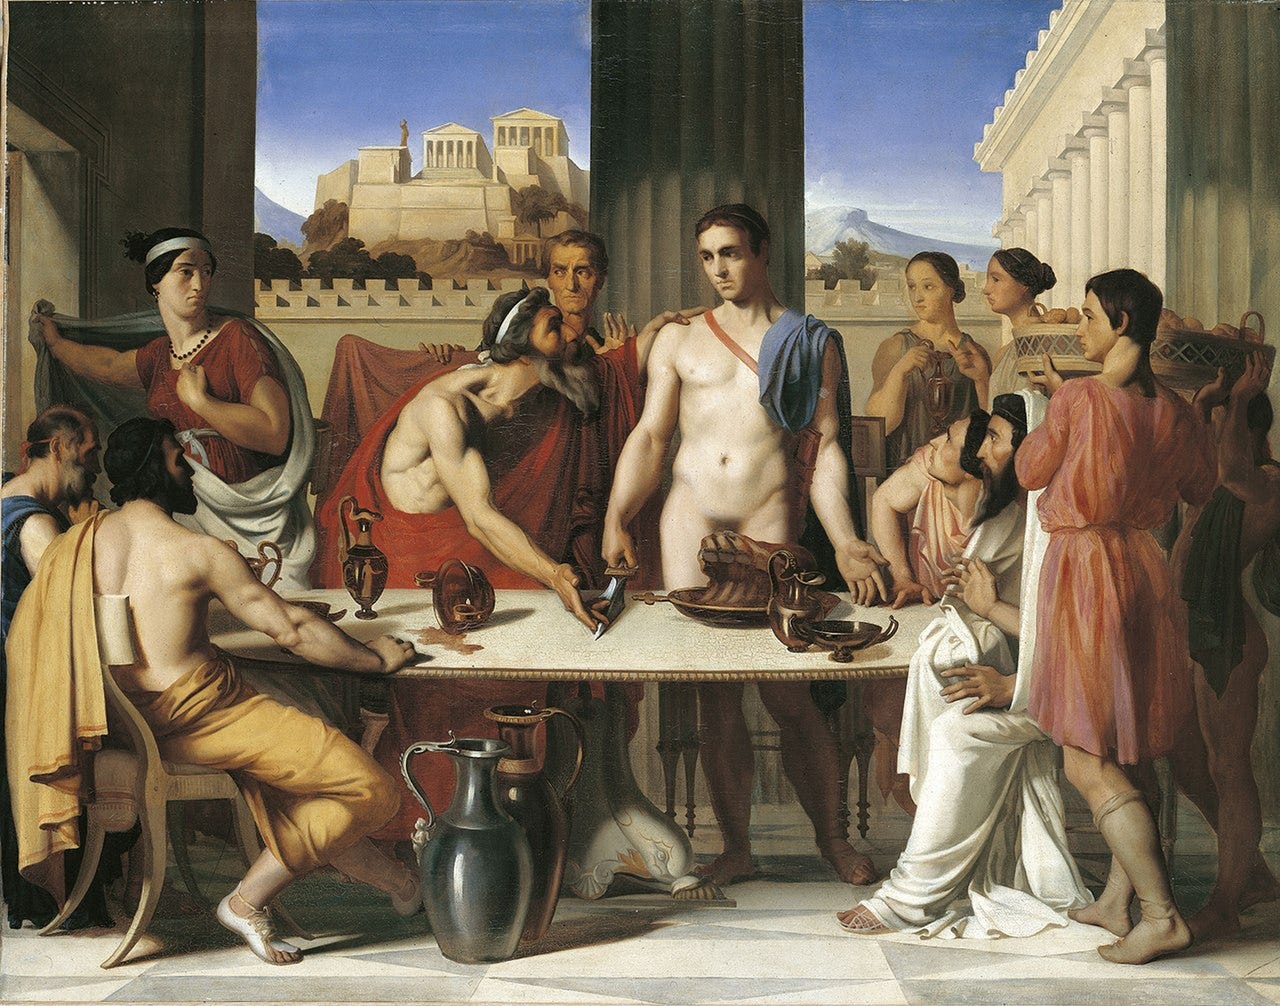 A imagem apresenta gregos reunidos em volta de uma mesa com Egeu e Teseu ao centro da mesa. Teseu está seminu e possui corpo atlético.